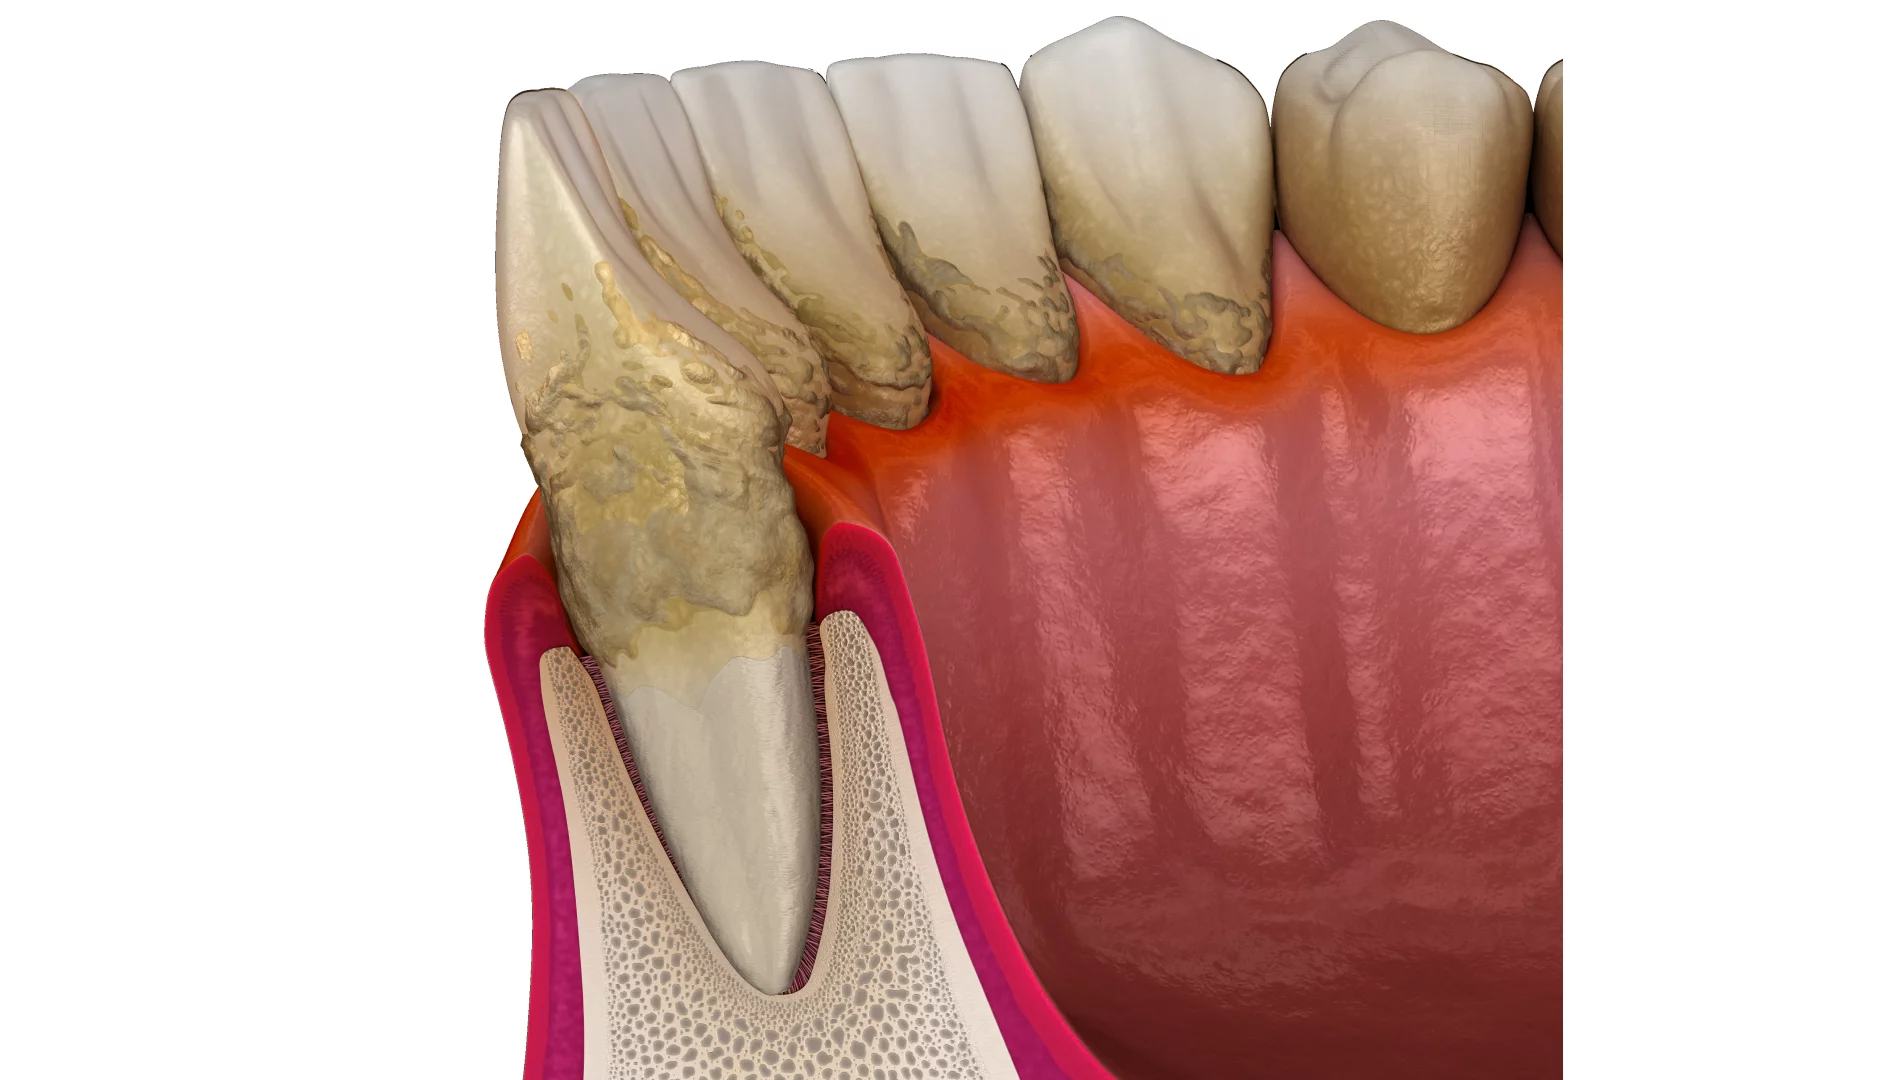 Імплантація зубів при пародонтиті та пародонтозі